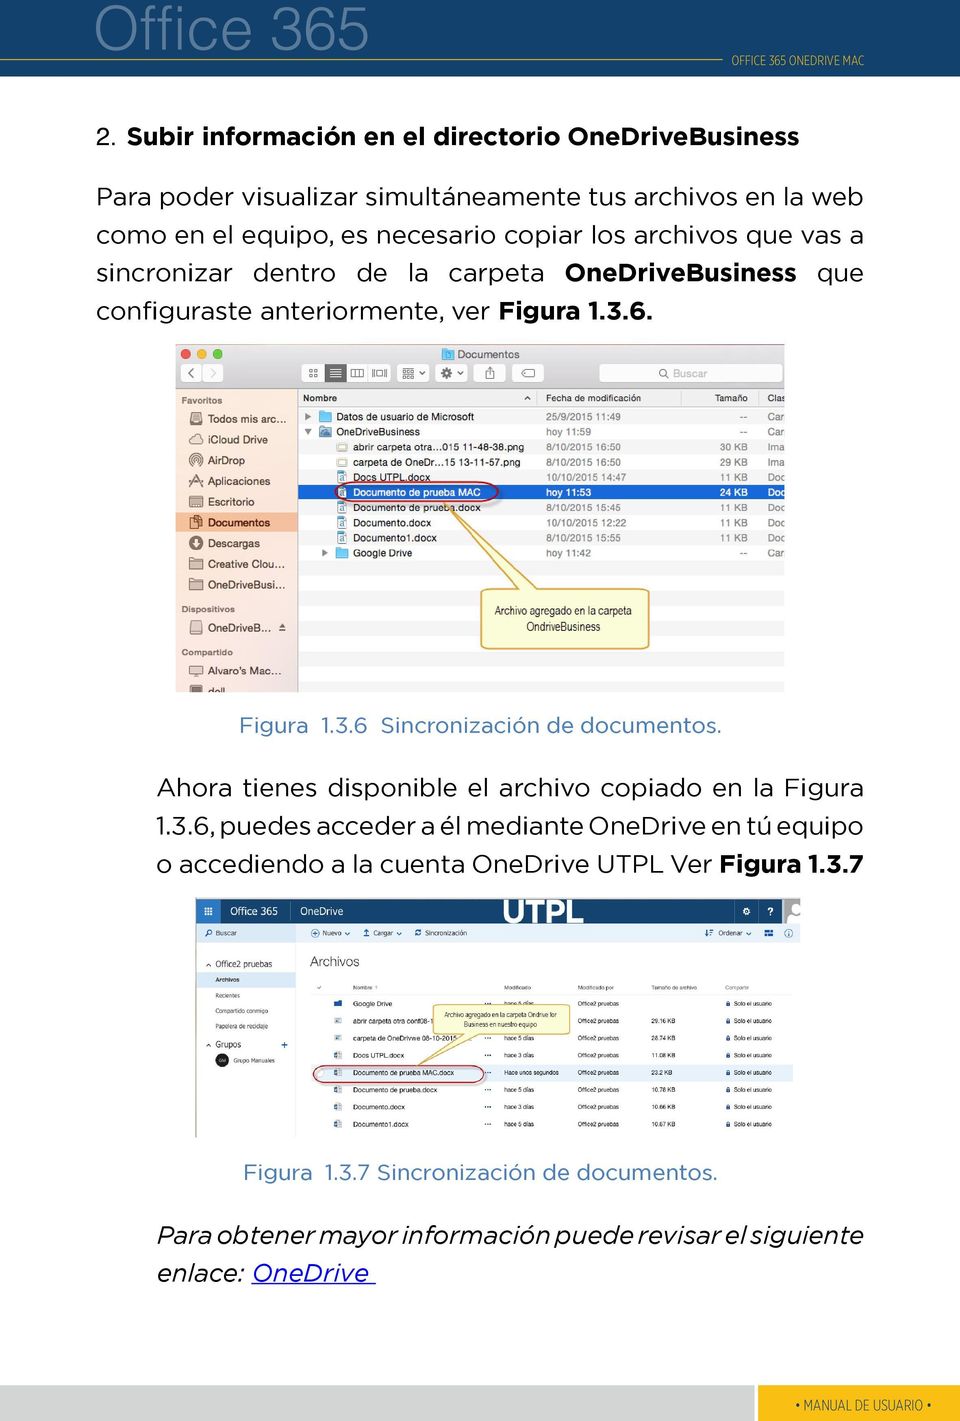 6. Figura 1.3.6 Sincronización de documentos. Ahora tienes disponible el archivo copiado en la Figura 1.3.6, puedes acceder a él mediante OneDrive en tú equipo o accediendo a la cuenta OneDrive UTPL Ver Figura 1.